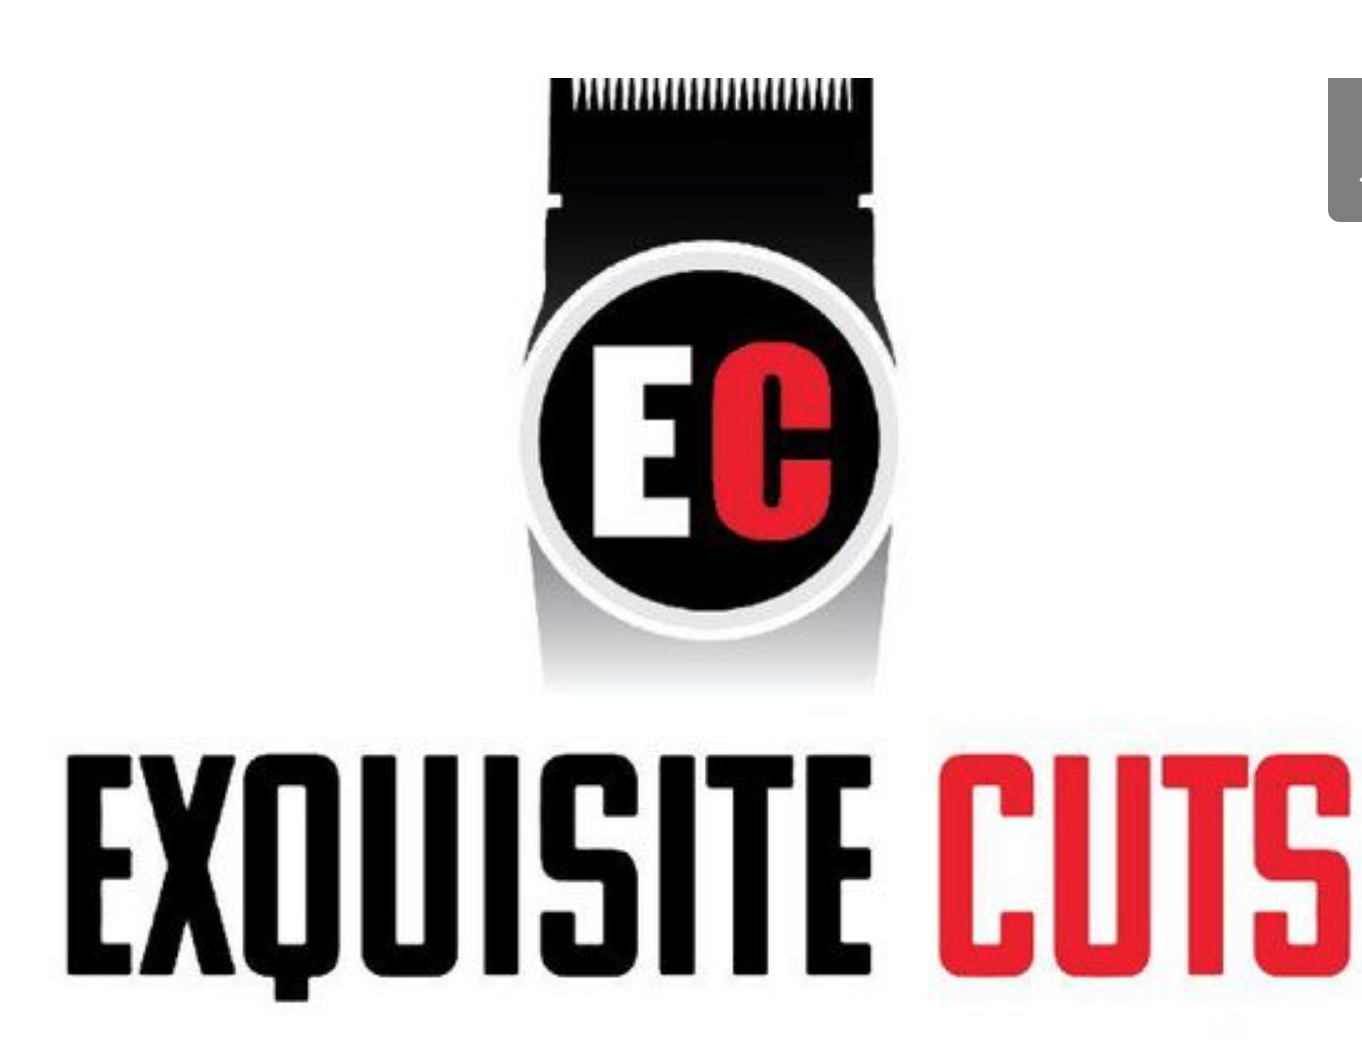 Exquisite Cuts